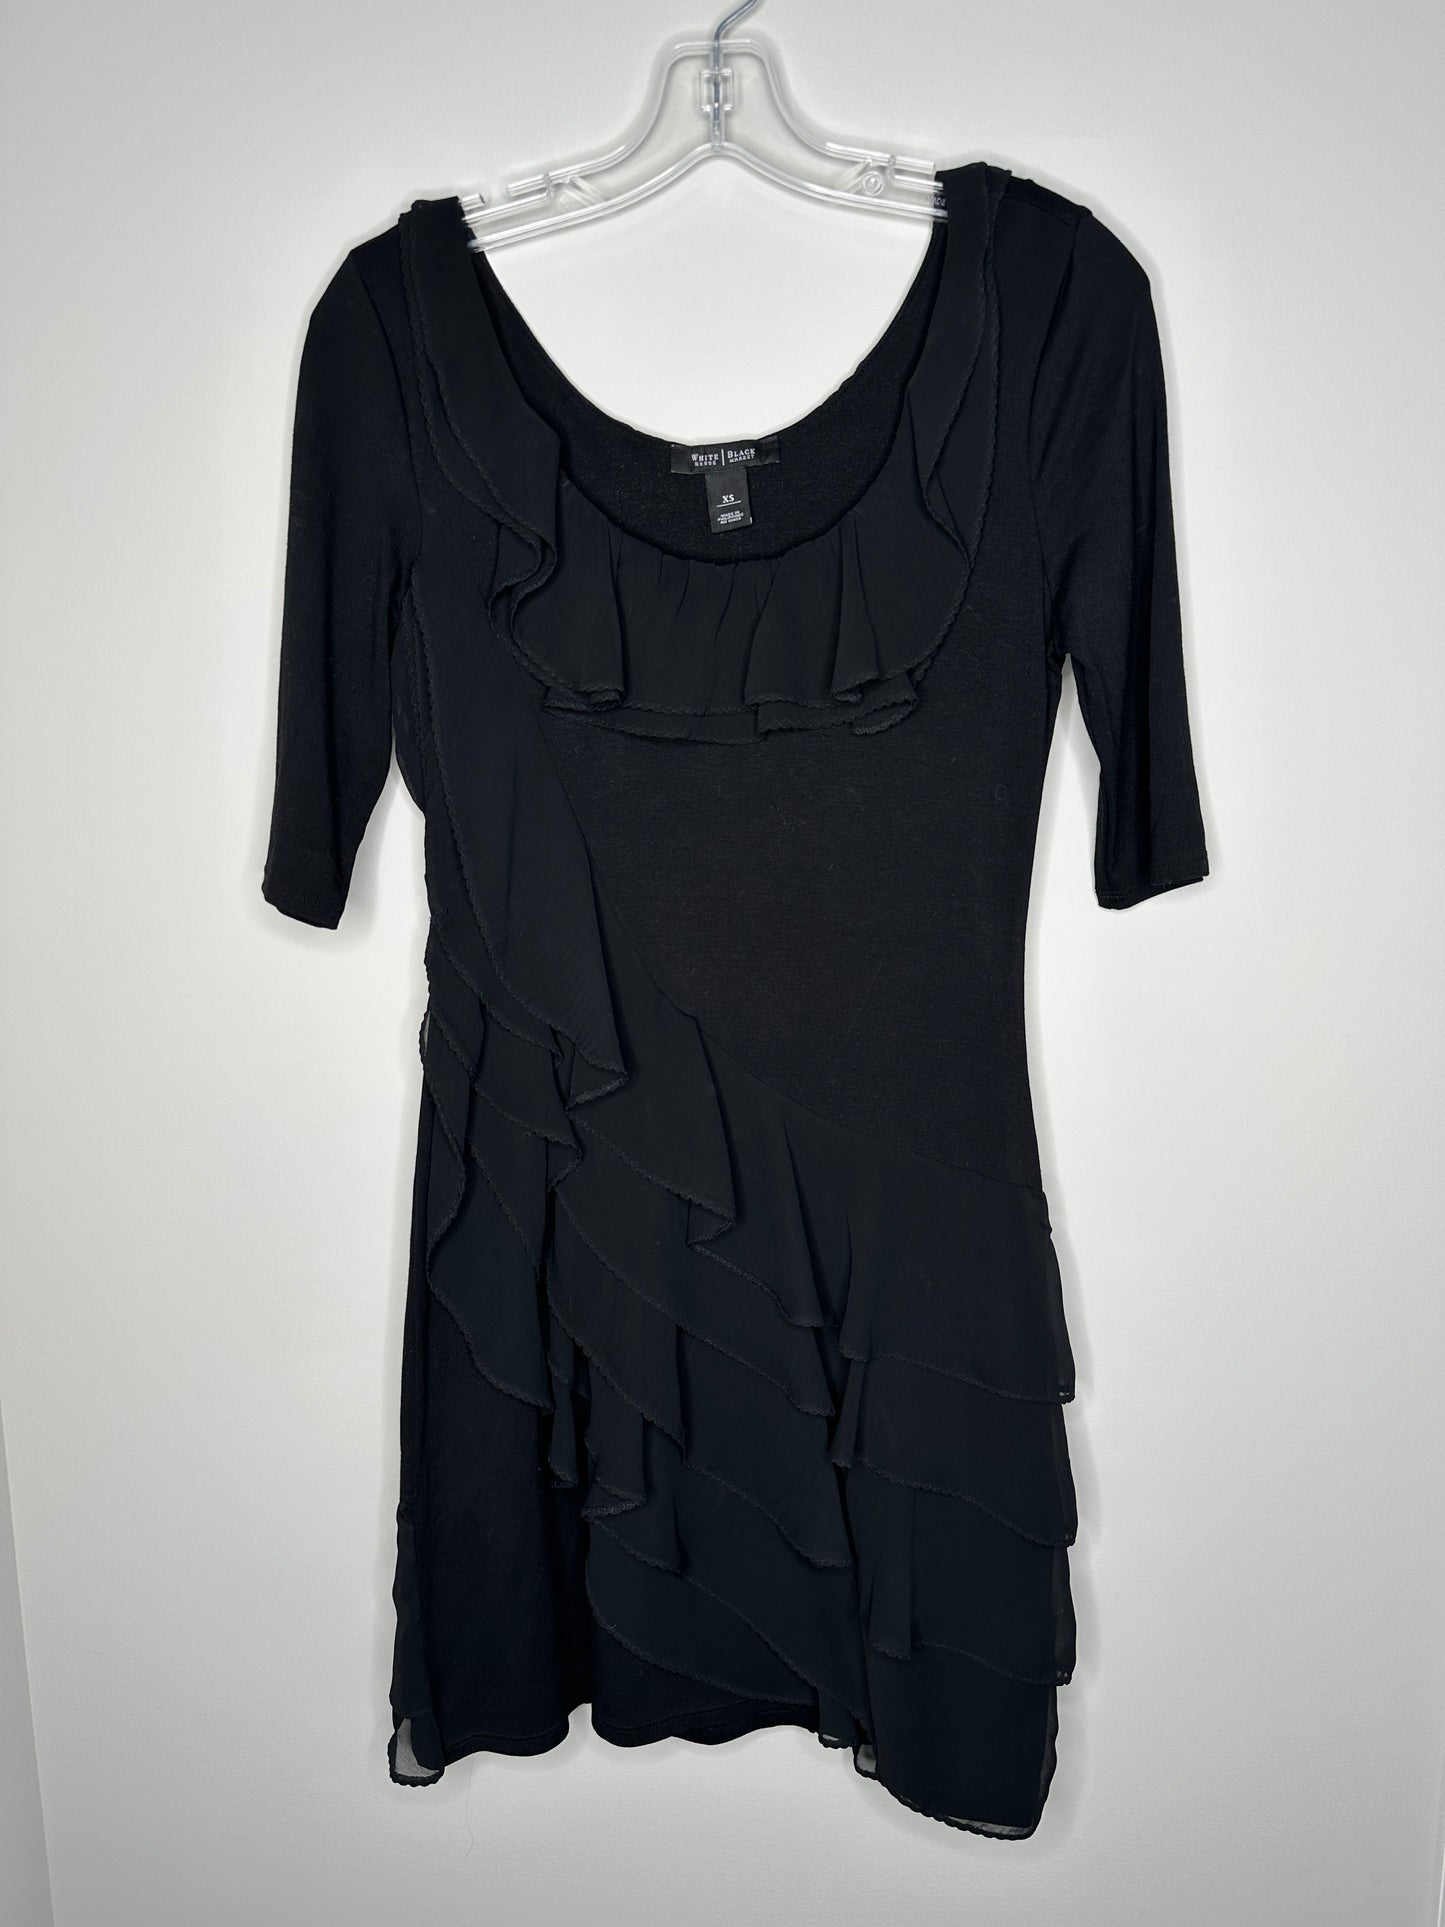 White House Black Market Size XS Black Short Sleeve Ruffle Dress